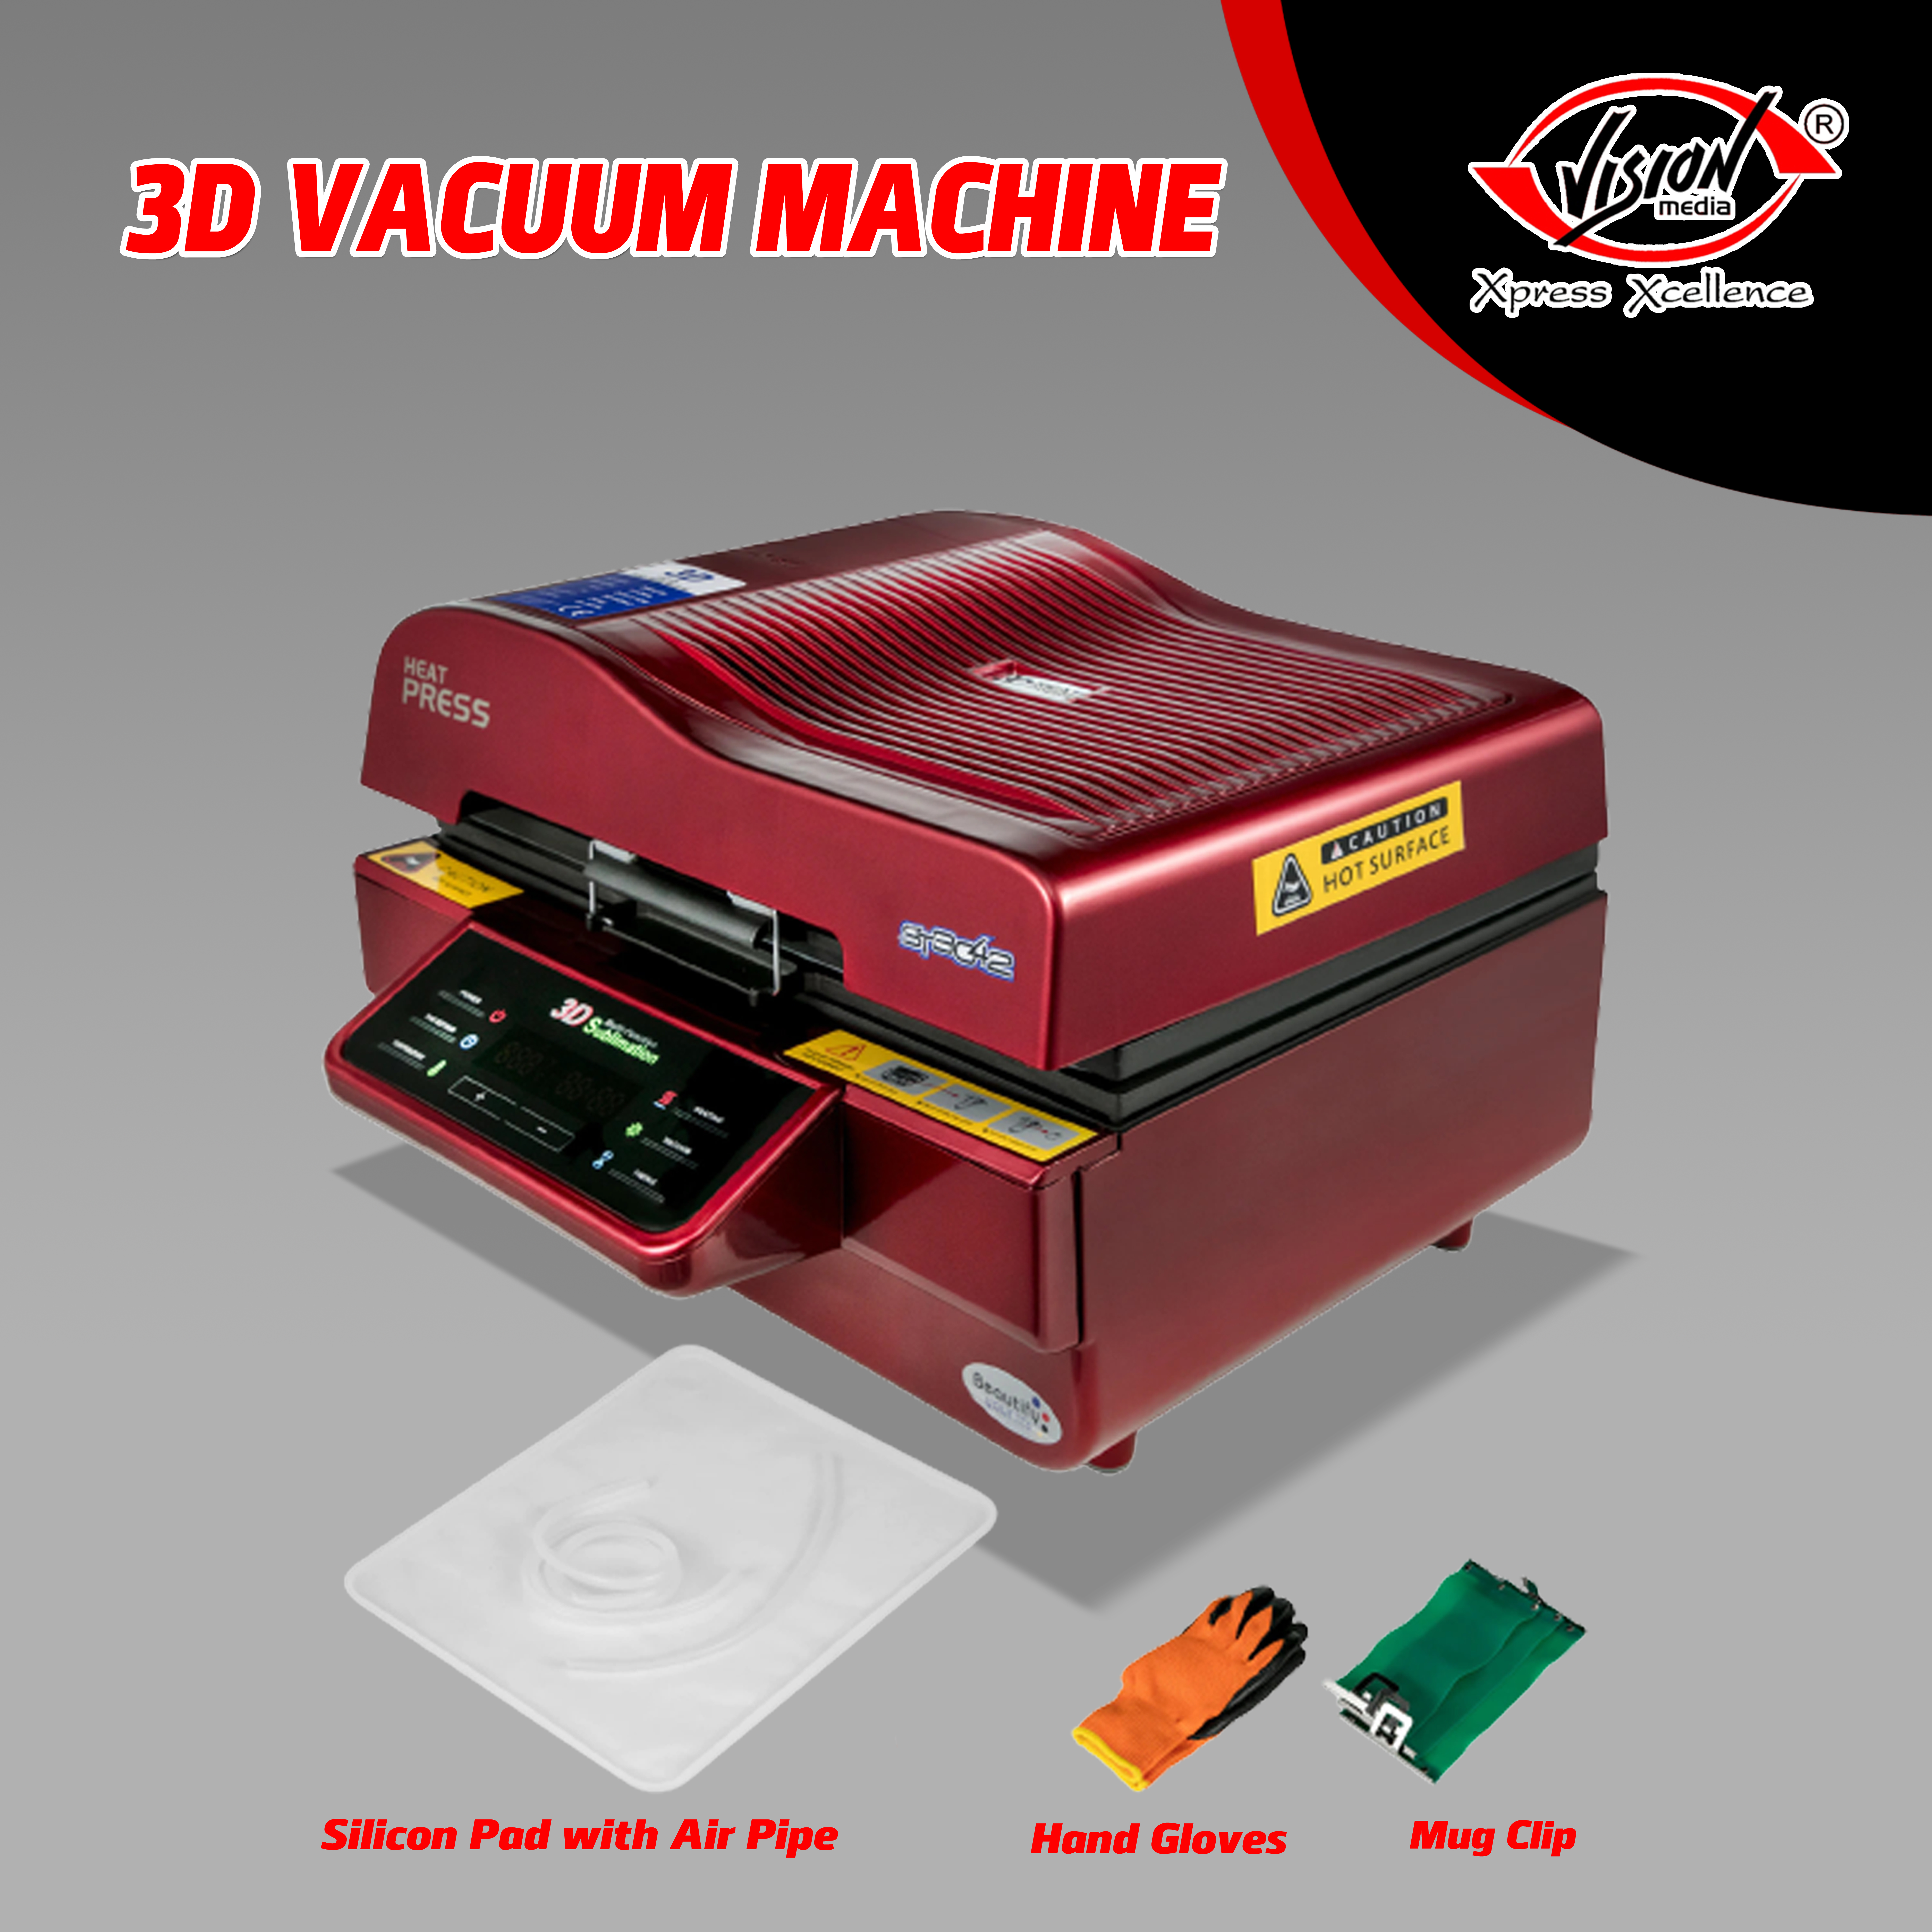 3D VACUUM MACHINE ST-3042